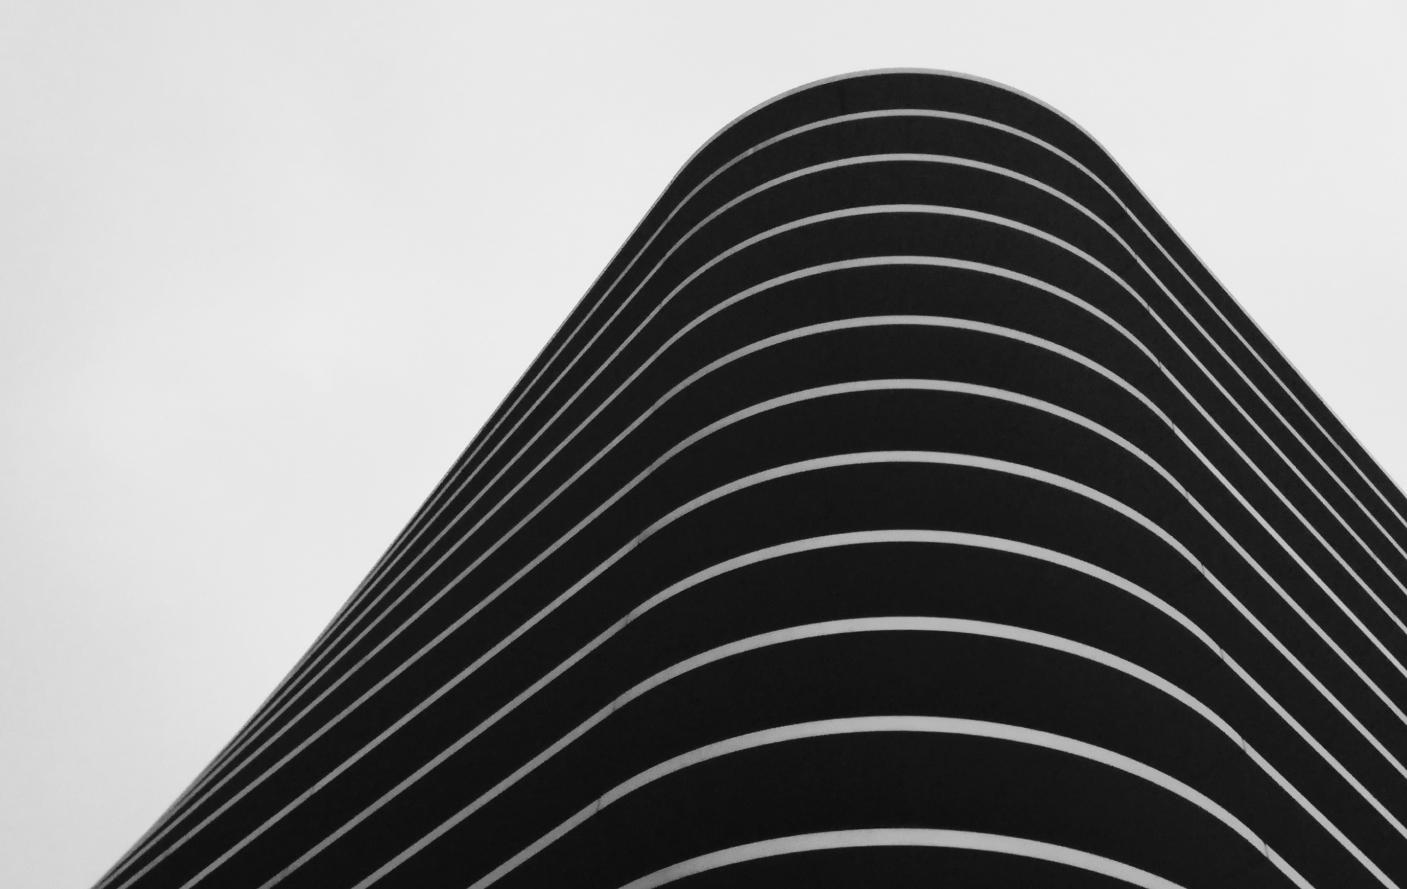 Arte abstrata em preto em branco com ondas que remetem a visão de um edifício contemporâneo visto de baixo para cima